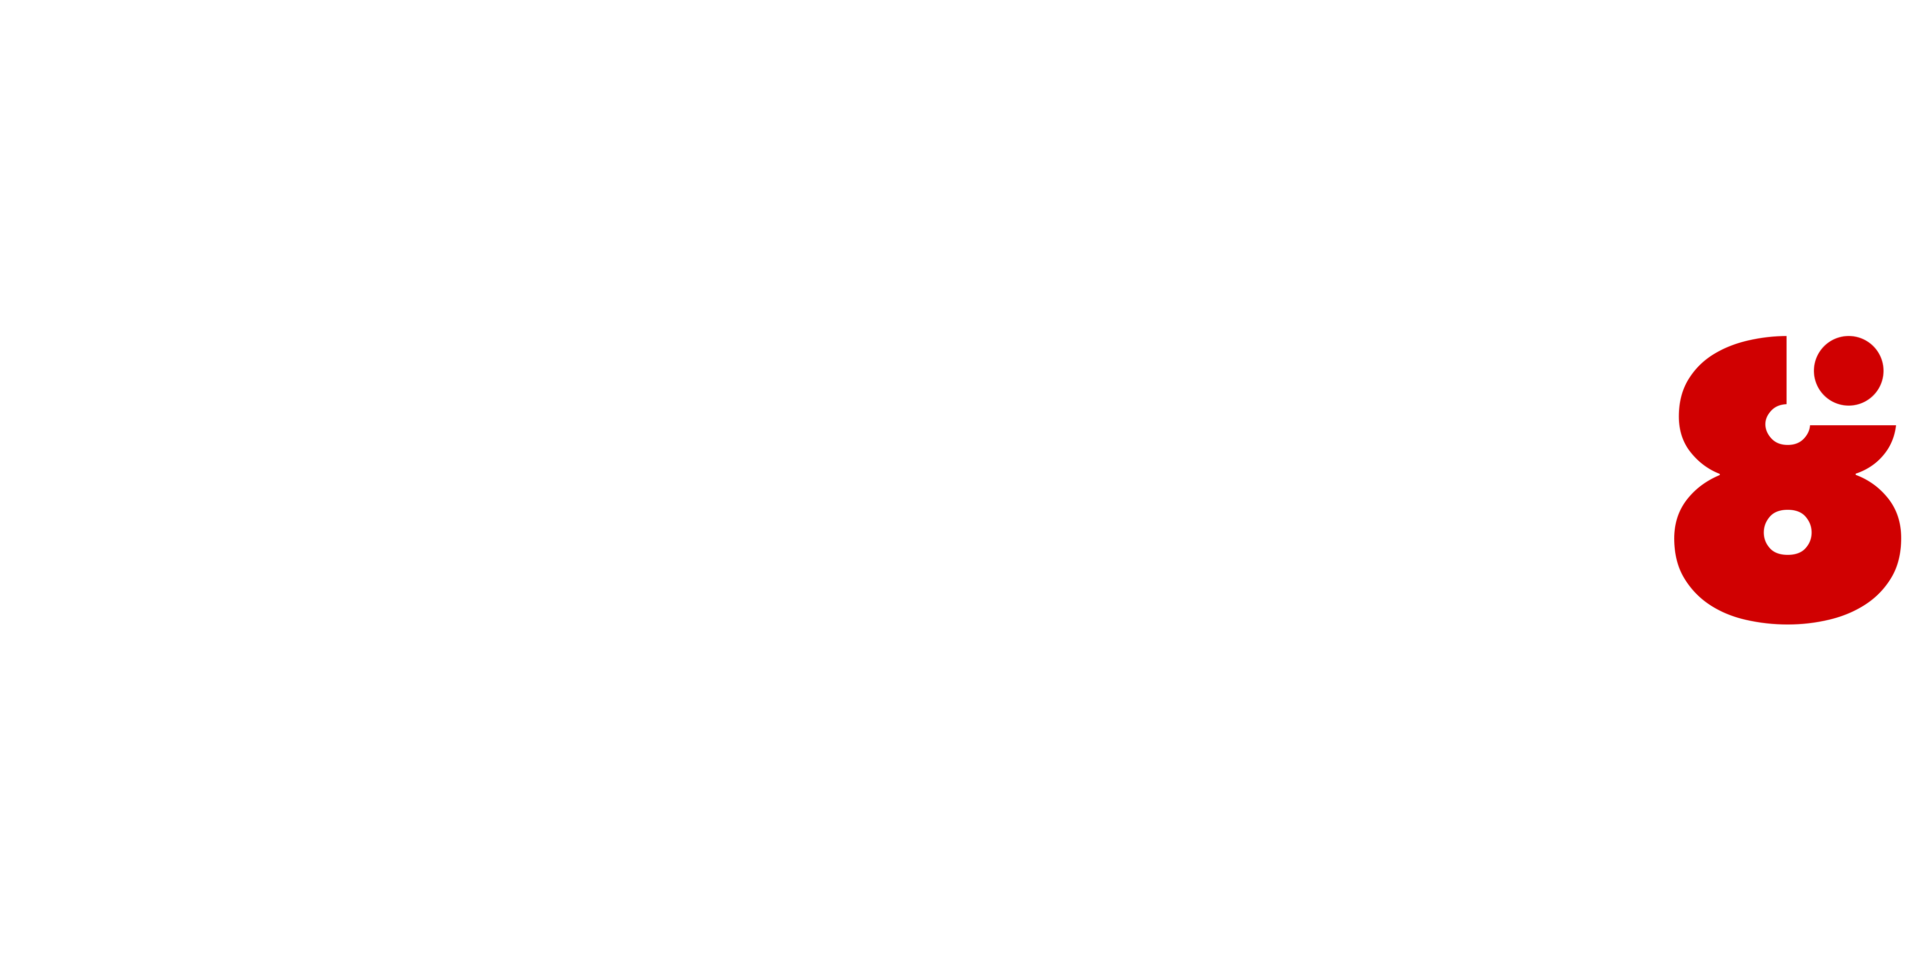 Conver8 Digital